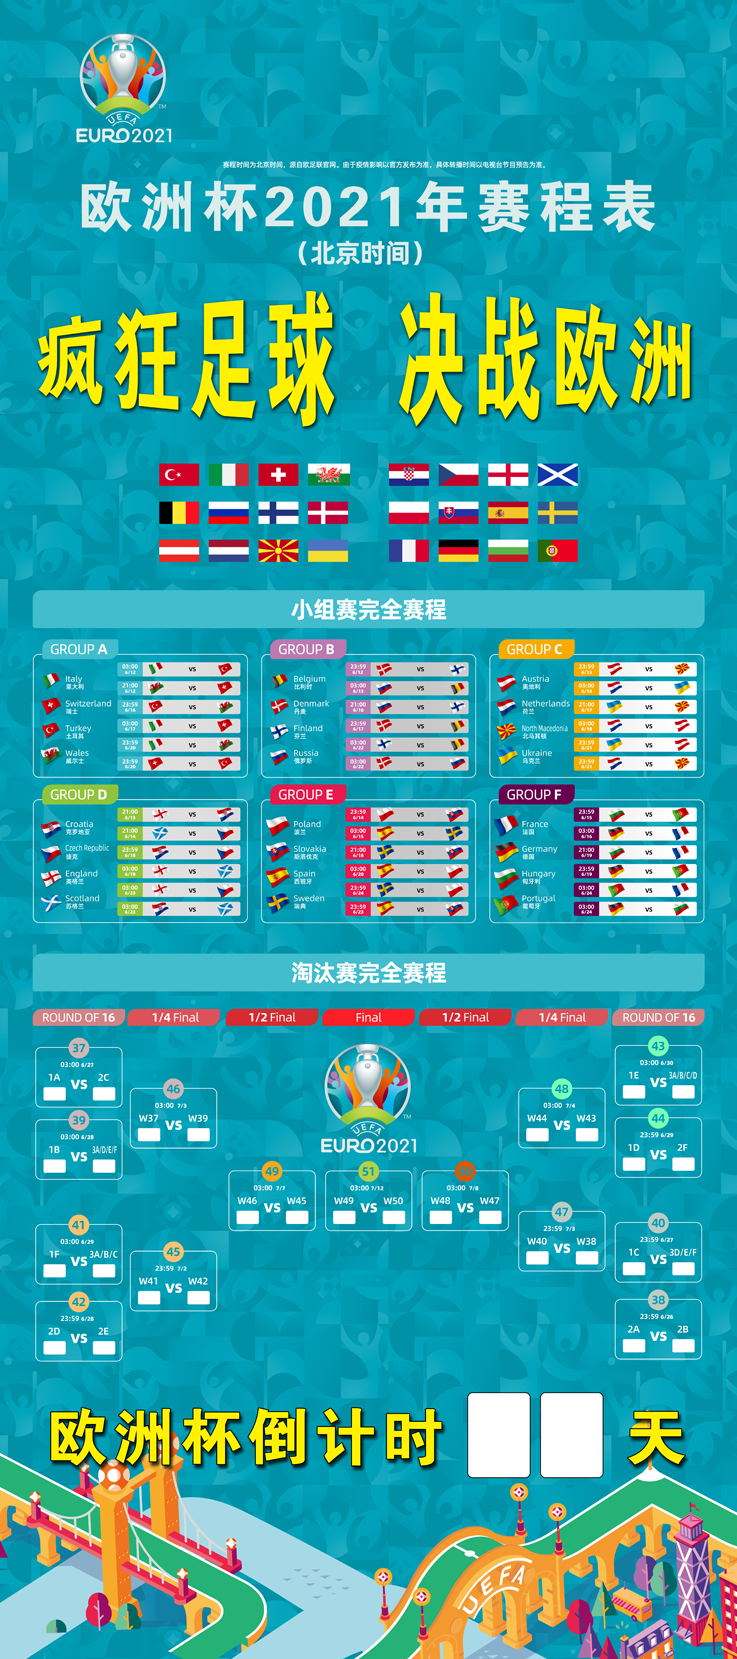 2021欧洲杯赛程 - 先看2021欧洲杯赛程表决赛